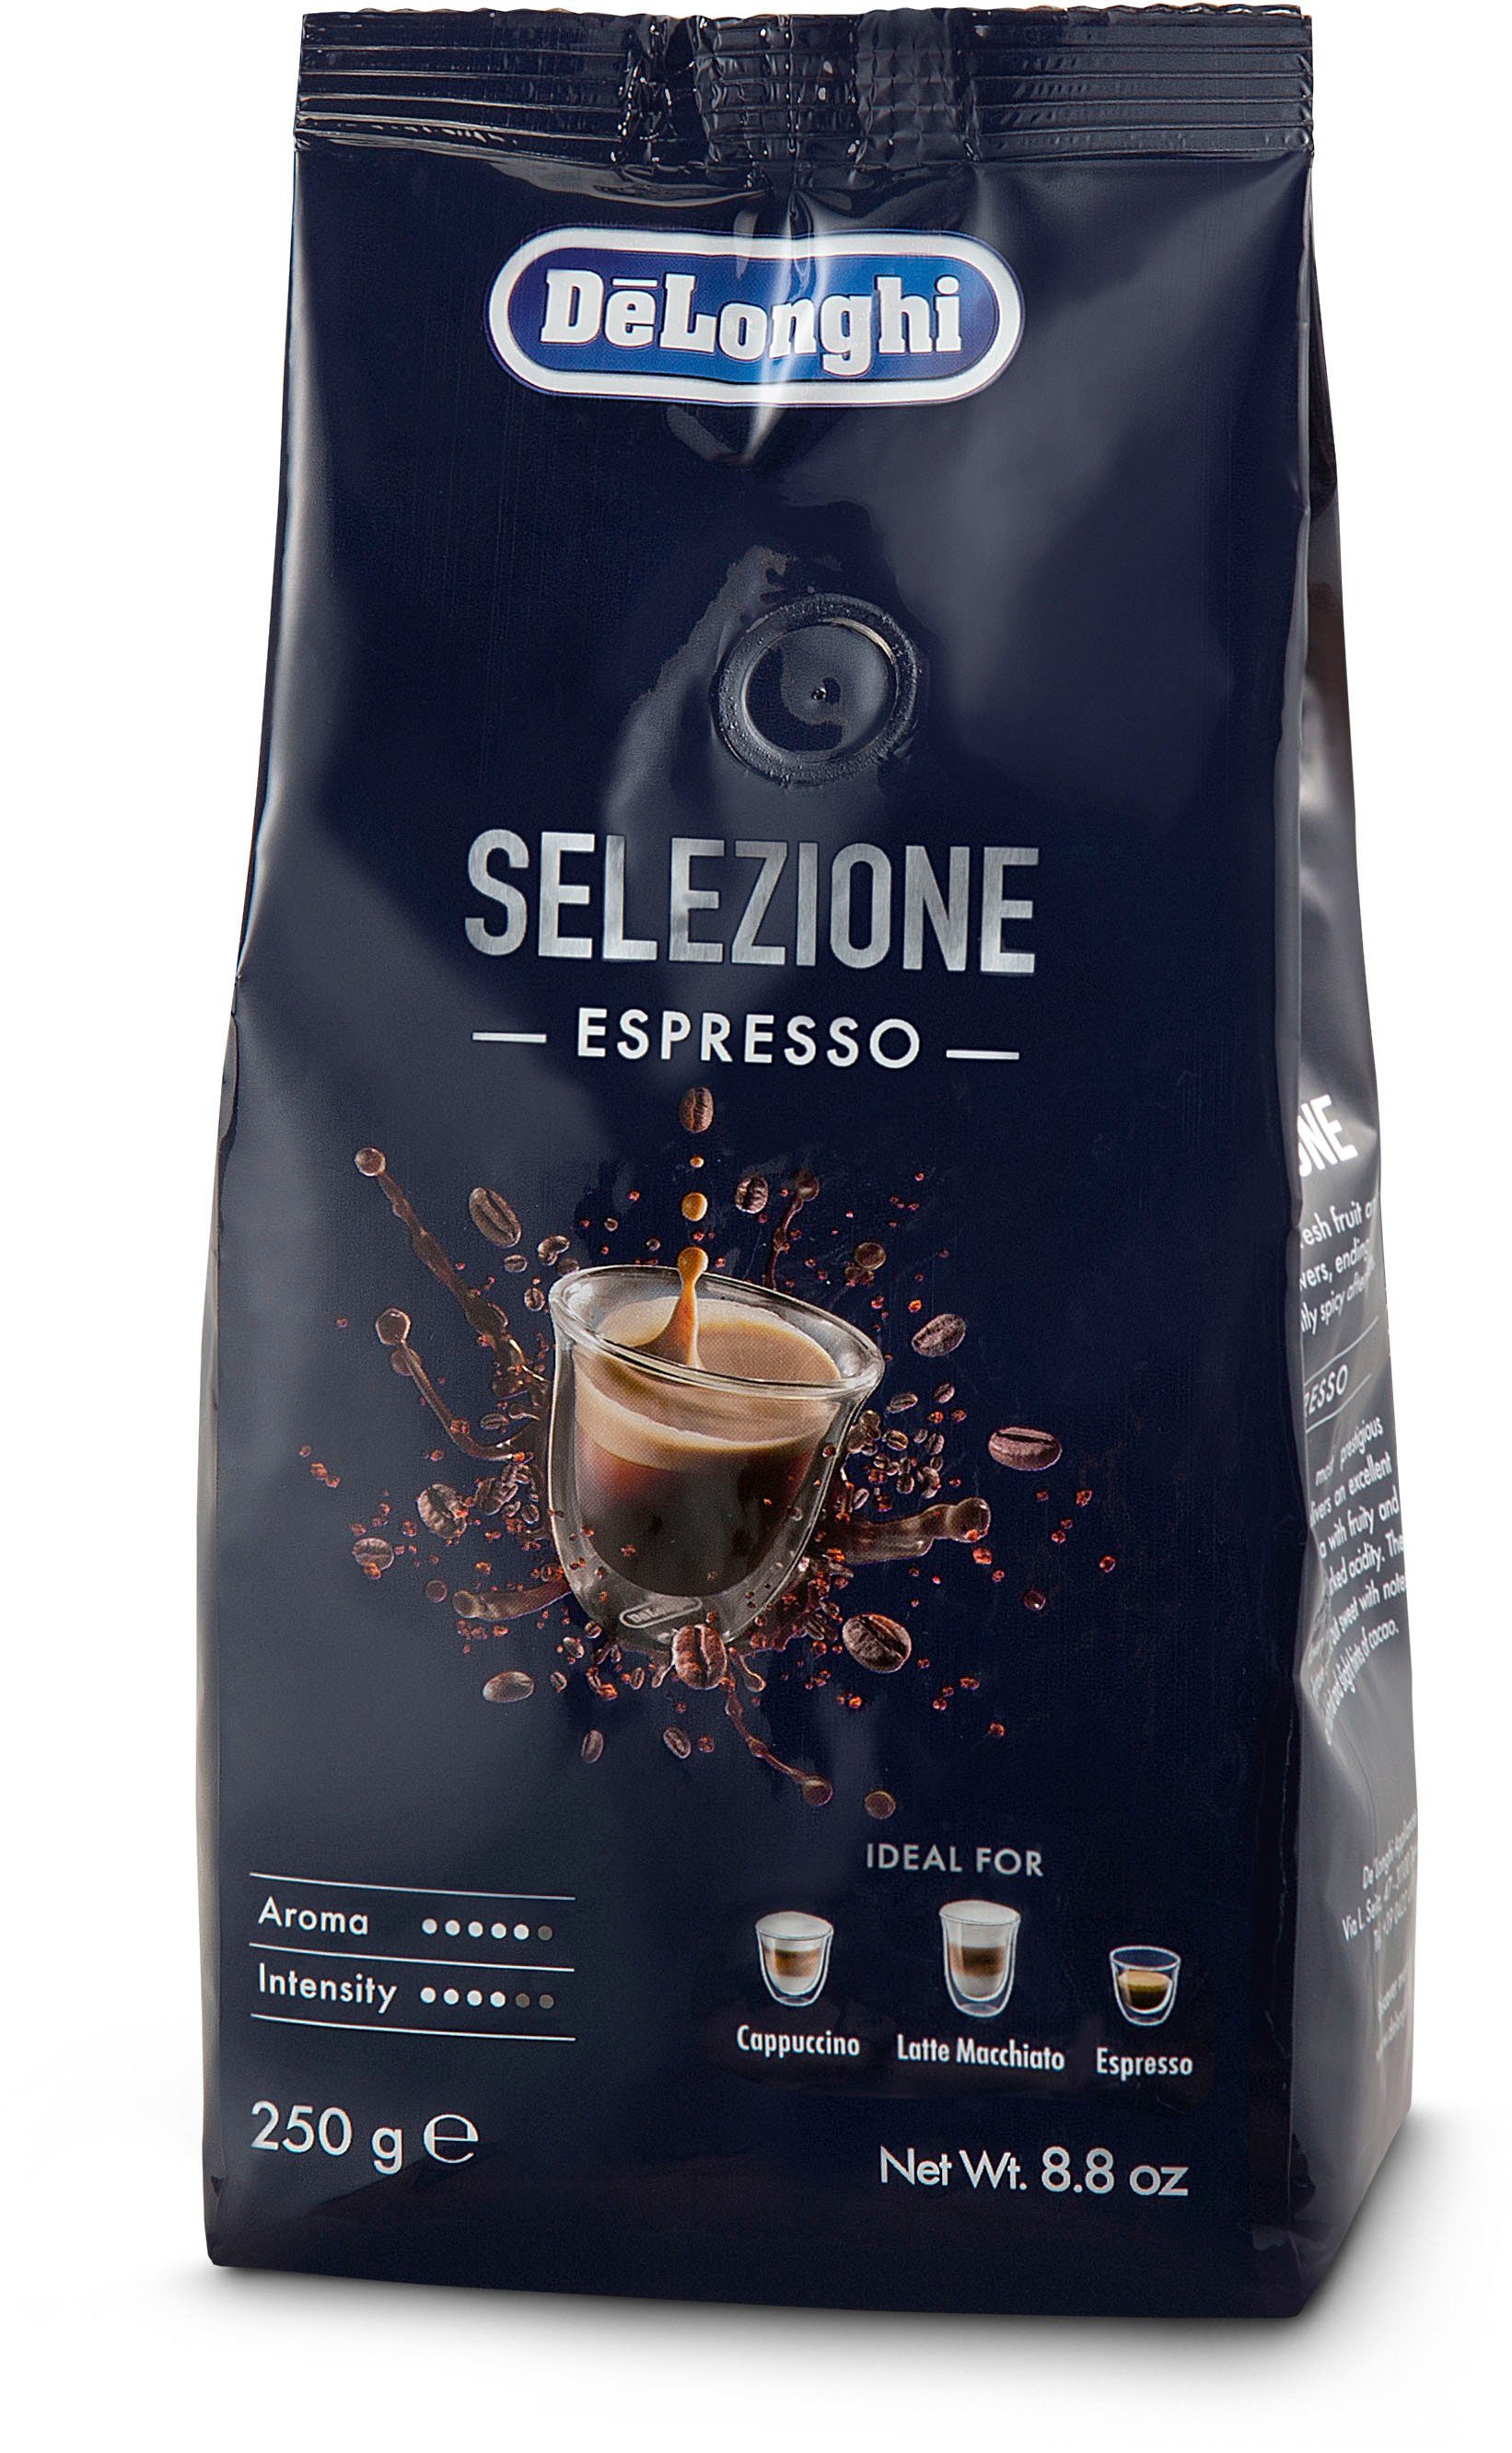 EC9155.MB, Selezione Espresso von im 250g UVP Siebträgermaschine Wert Specialista La 6,49 De'Longhi € inkl. Arte